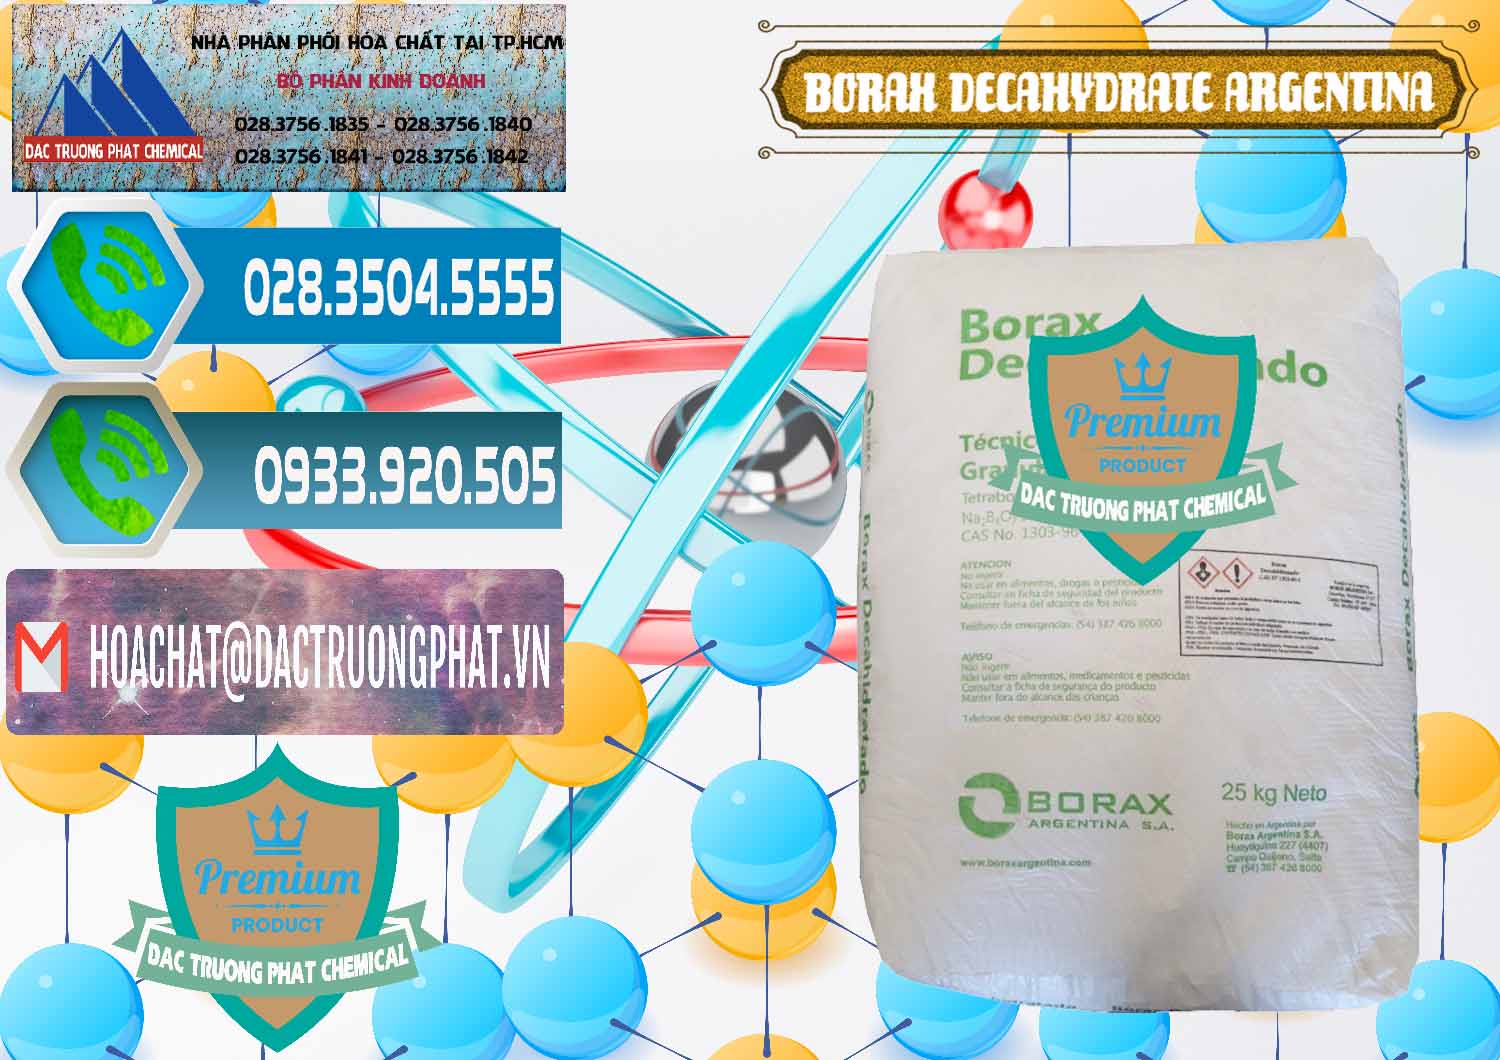 Chuyên bán & phân phối Borax Decahydrate Argentina - 0446 - Đơn vị chuyên phân phối & nhập khẩu hóa chất tại TP.HCM - congtyhoachat.net